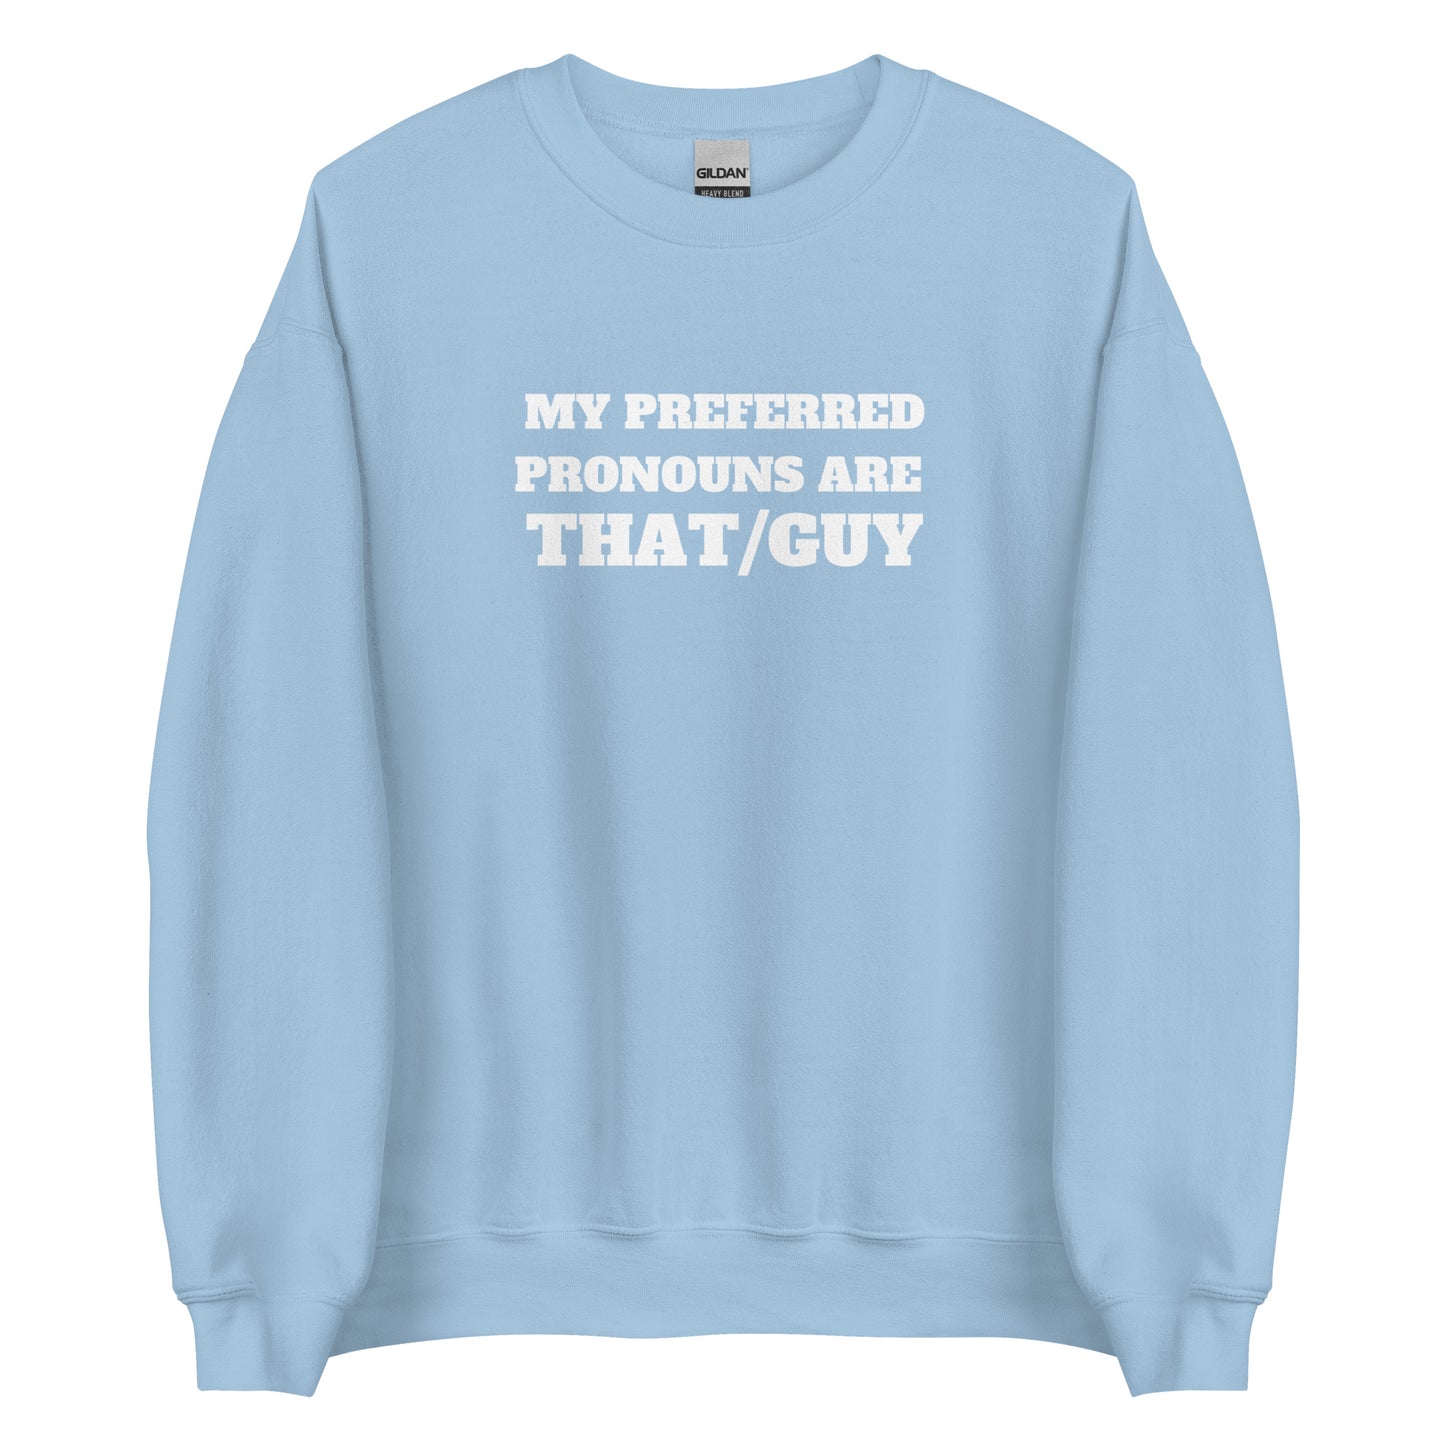 That/Guy Sweatshirt